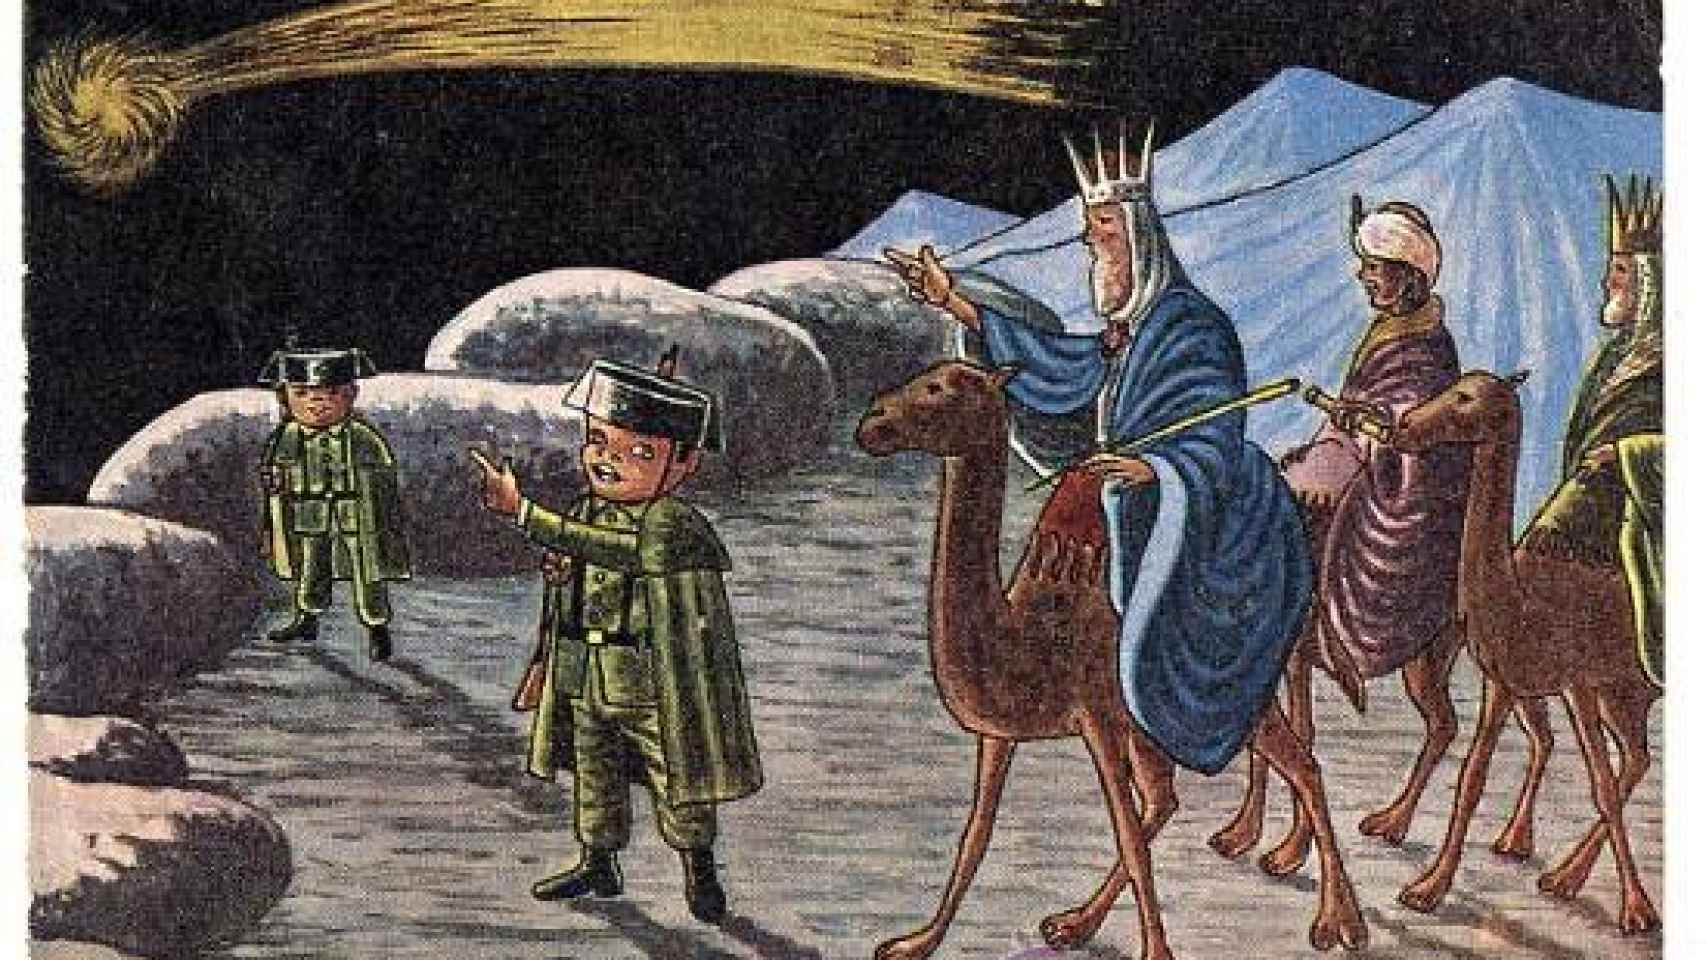 Imagen empleada por la Guardia Civil para felicitar el Día de los Reyes Magos.